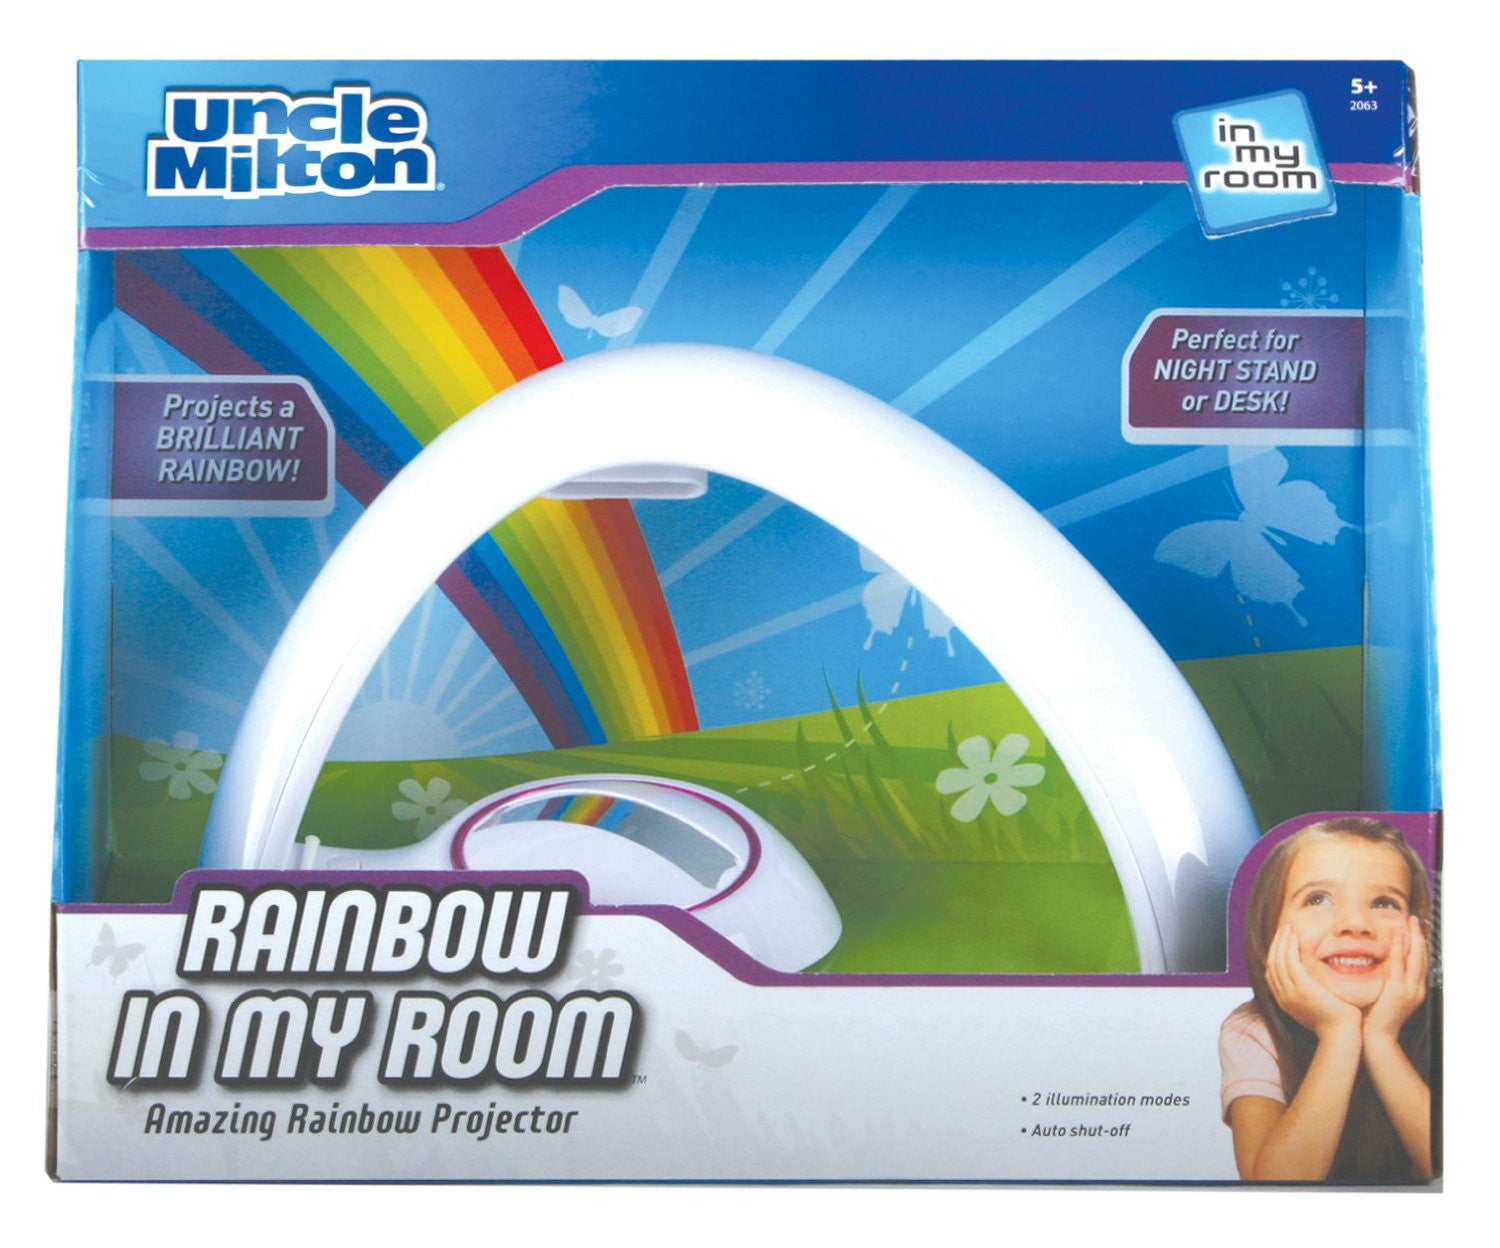 Rainbow Night Light - OddGifts.com